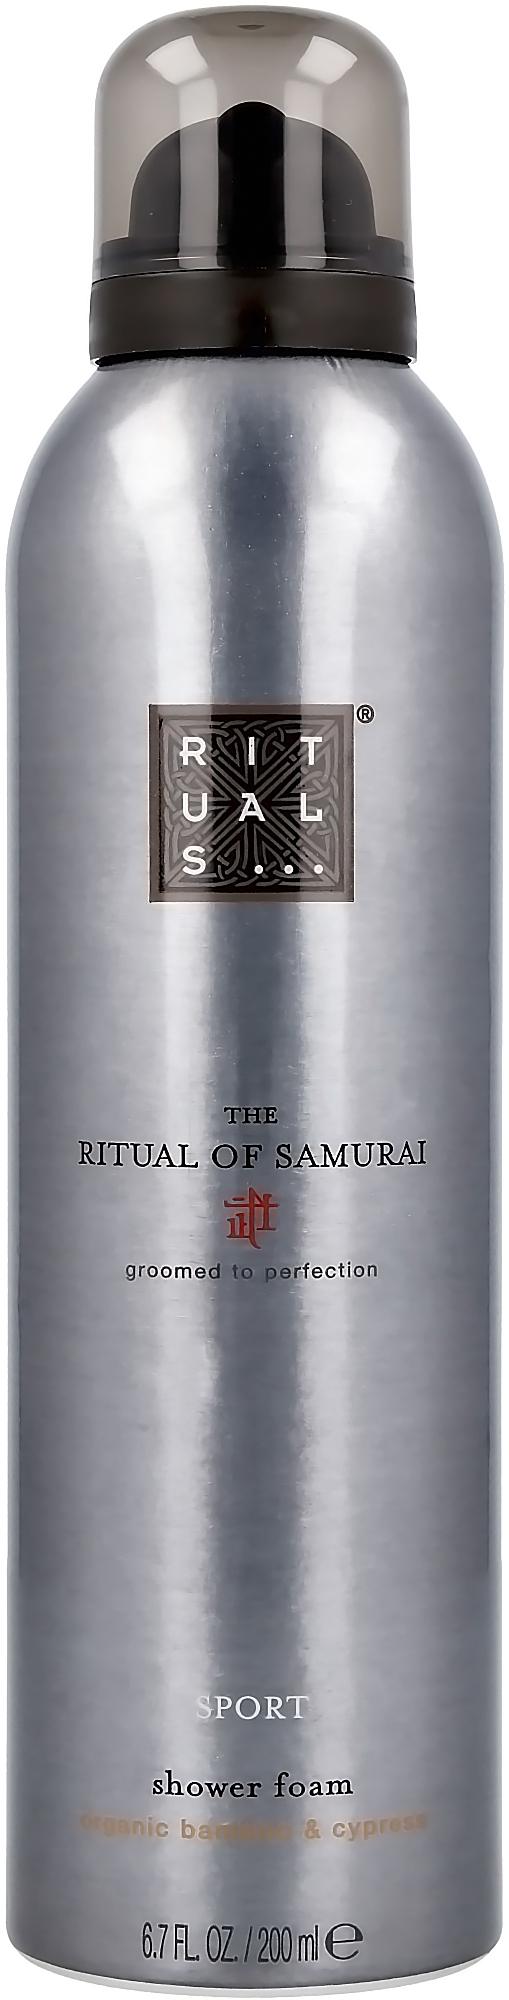 Rituals Samurai Sport - Mousse de Shower - Pack économique 3x 200 ml = 600  ml